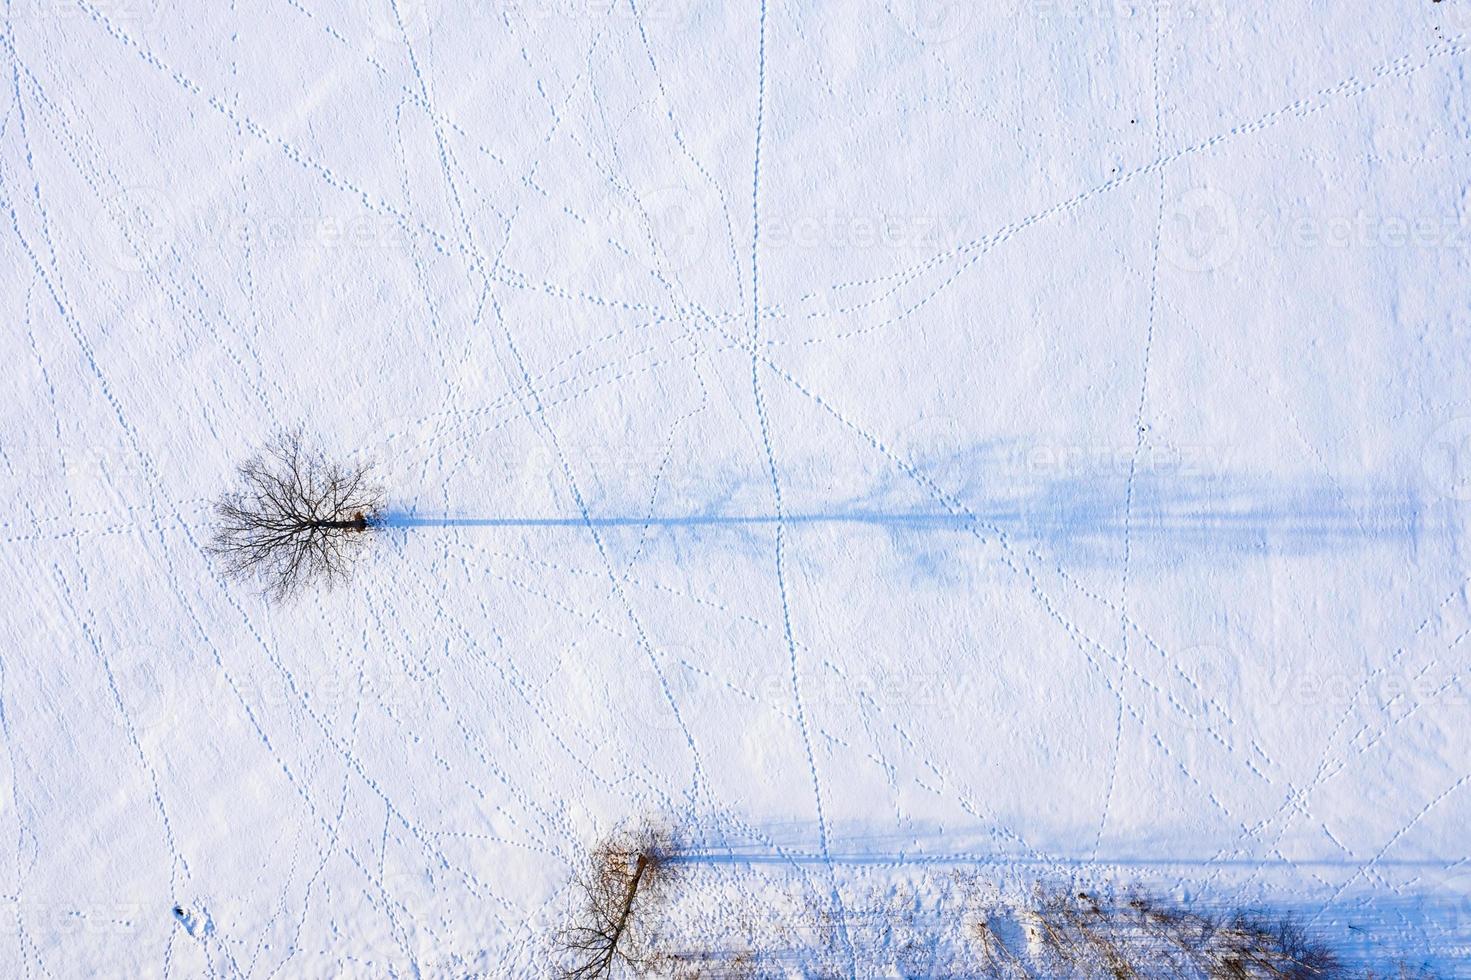 hermosa vista aérea del enorme lago congelado en medio de un bosque en letonia. lago ungurs congelado en letonia. foto